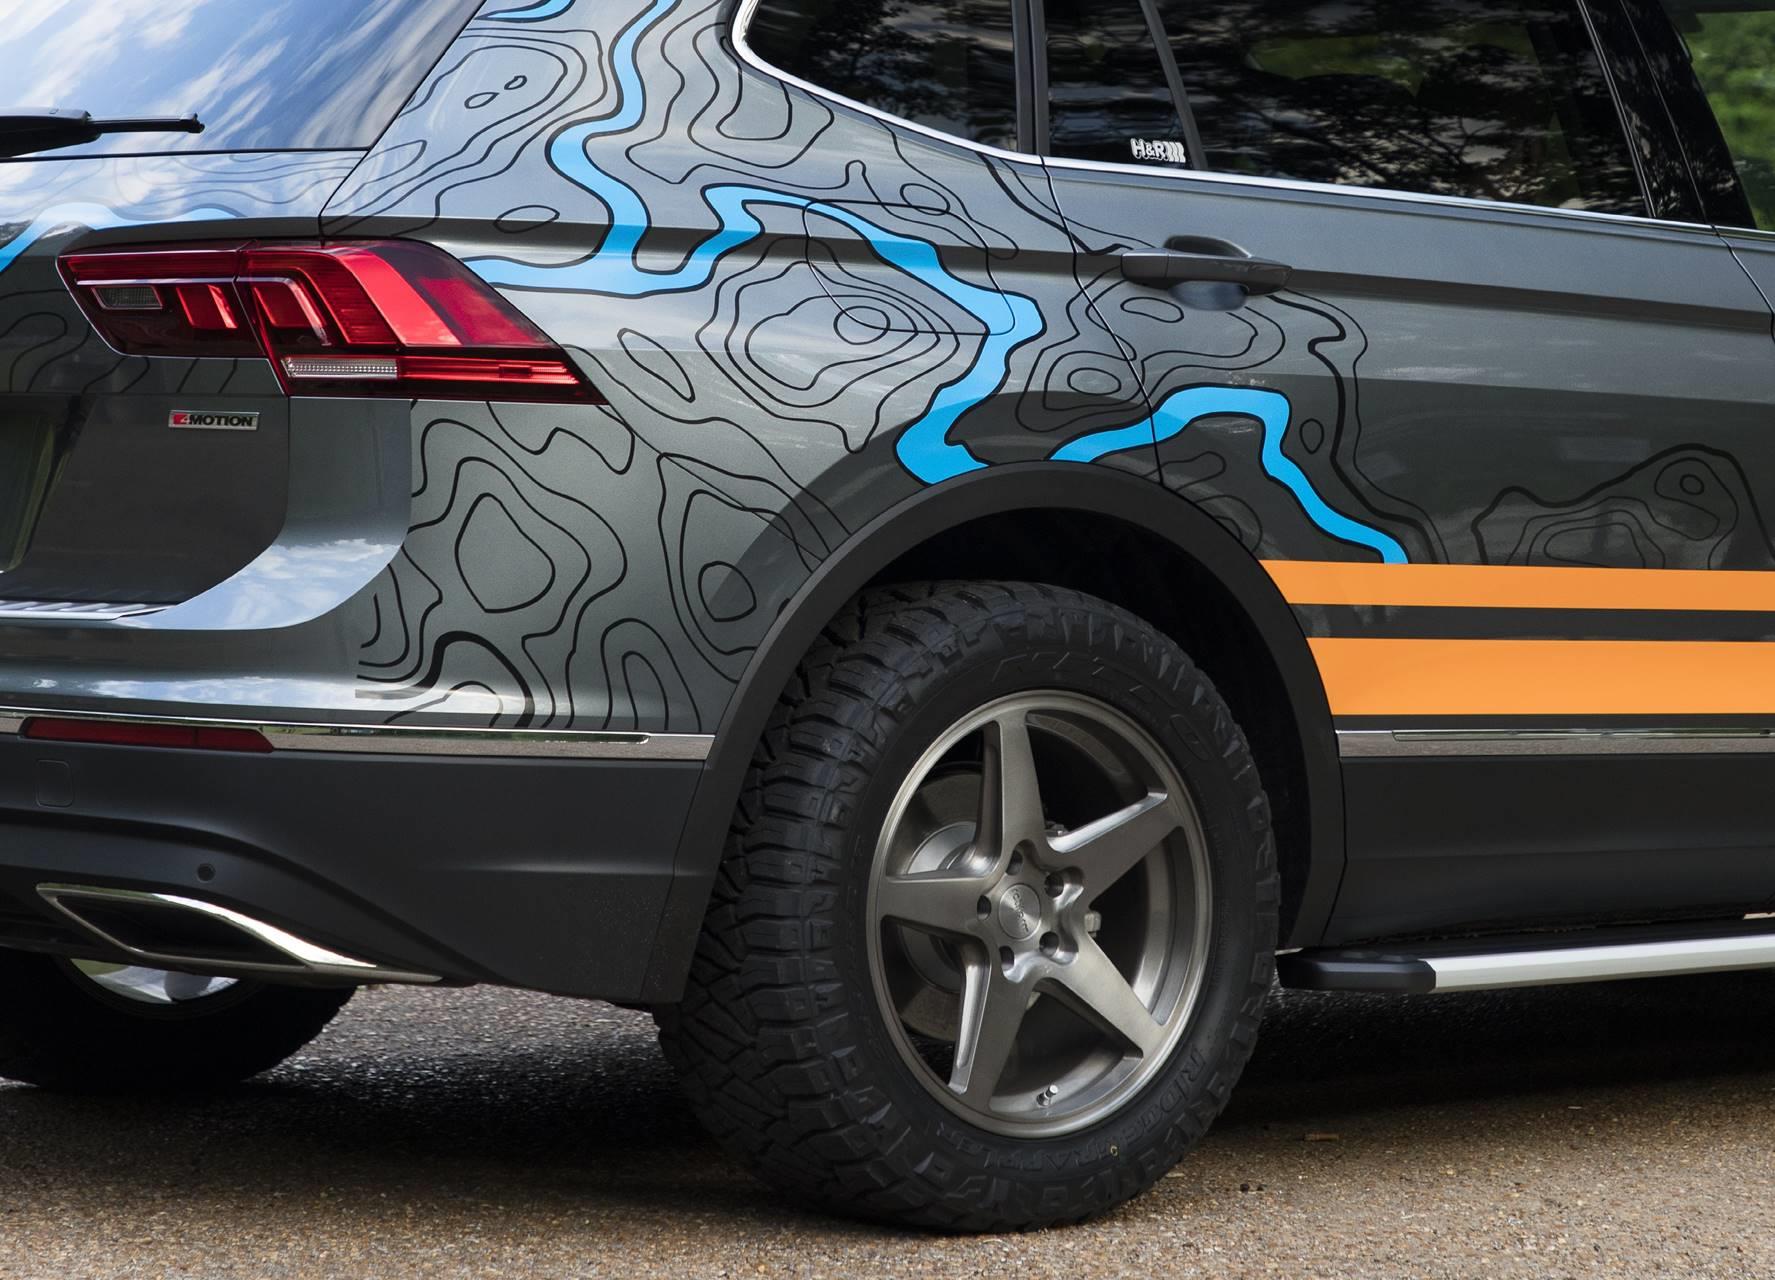 2019 Volkswagen Tiguan Adventure Concept